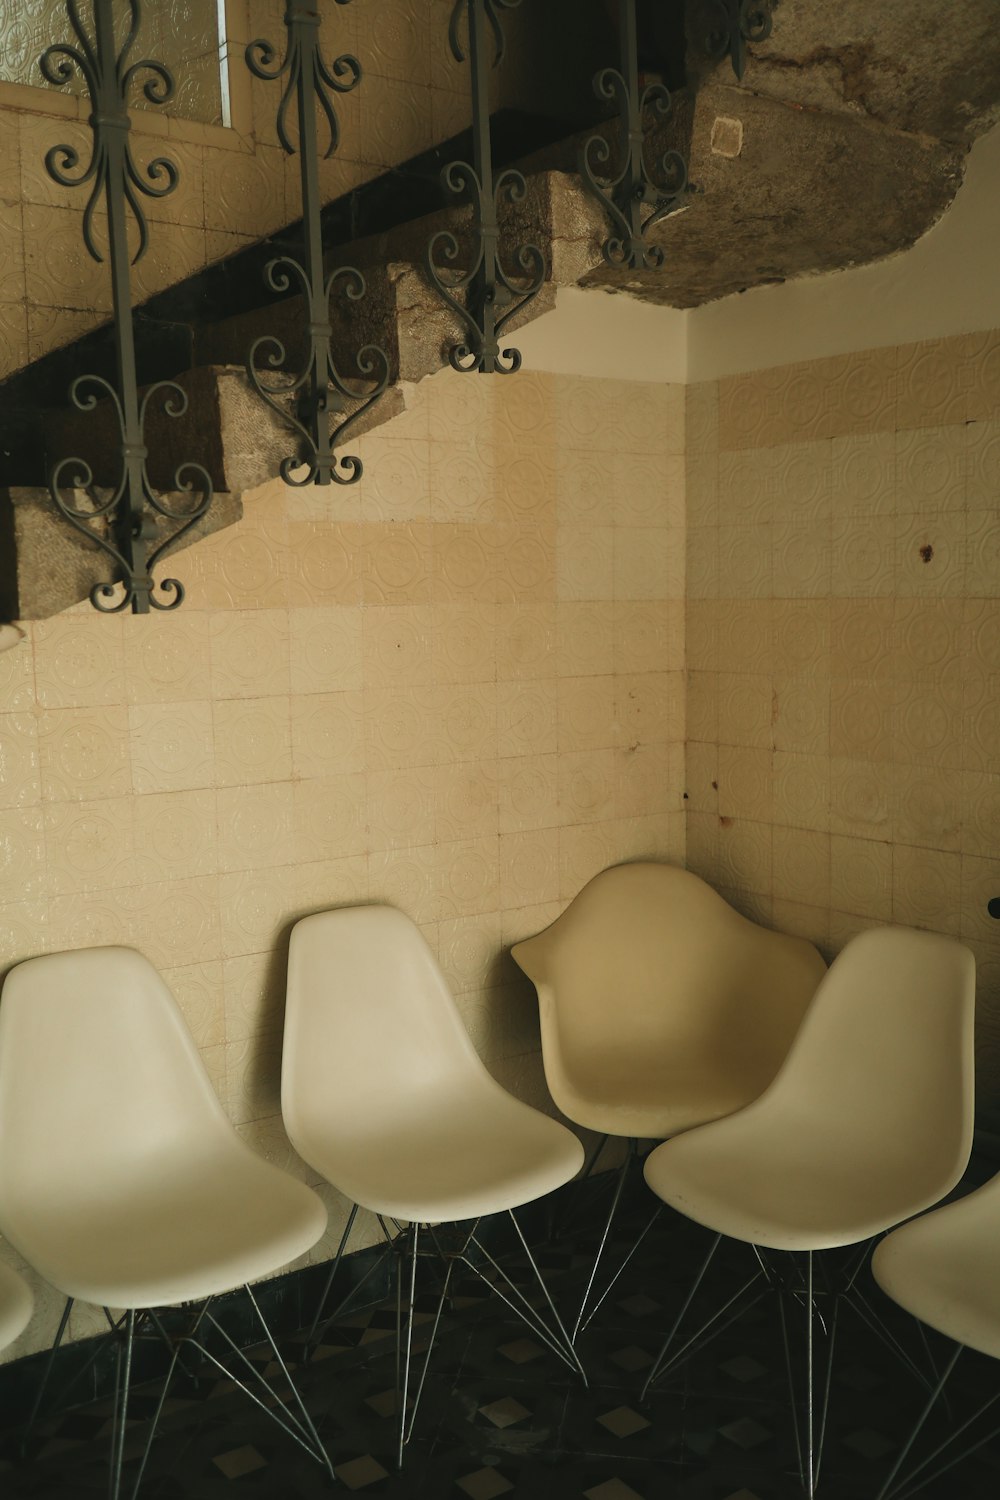 Cuatro sillas blancas están alineadas contra una pared